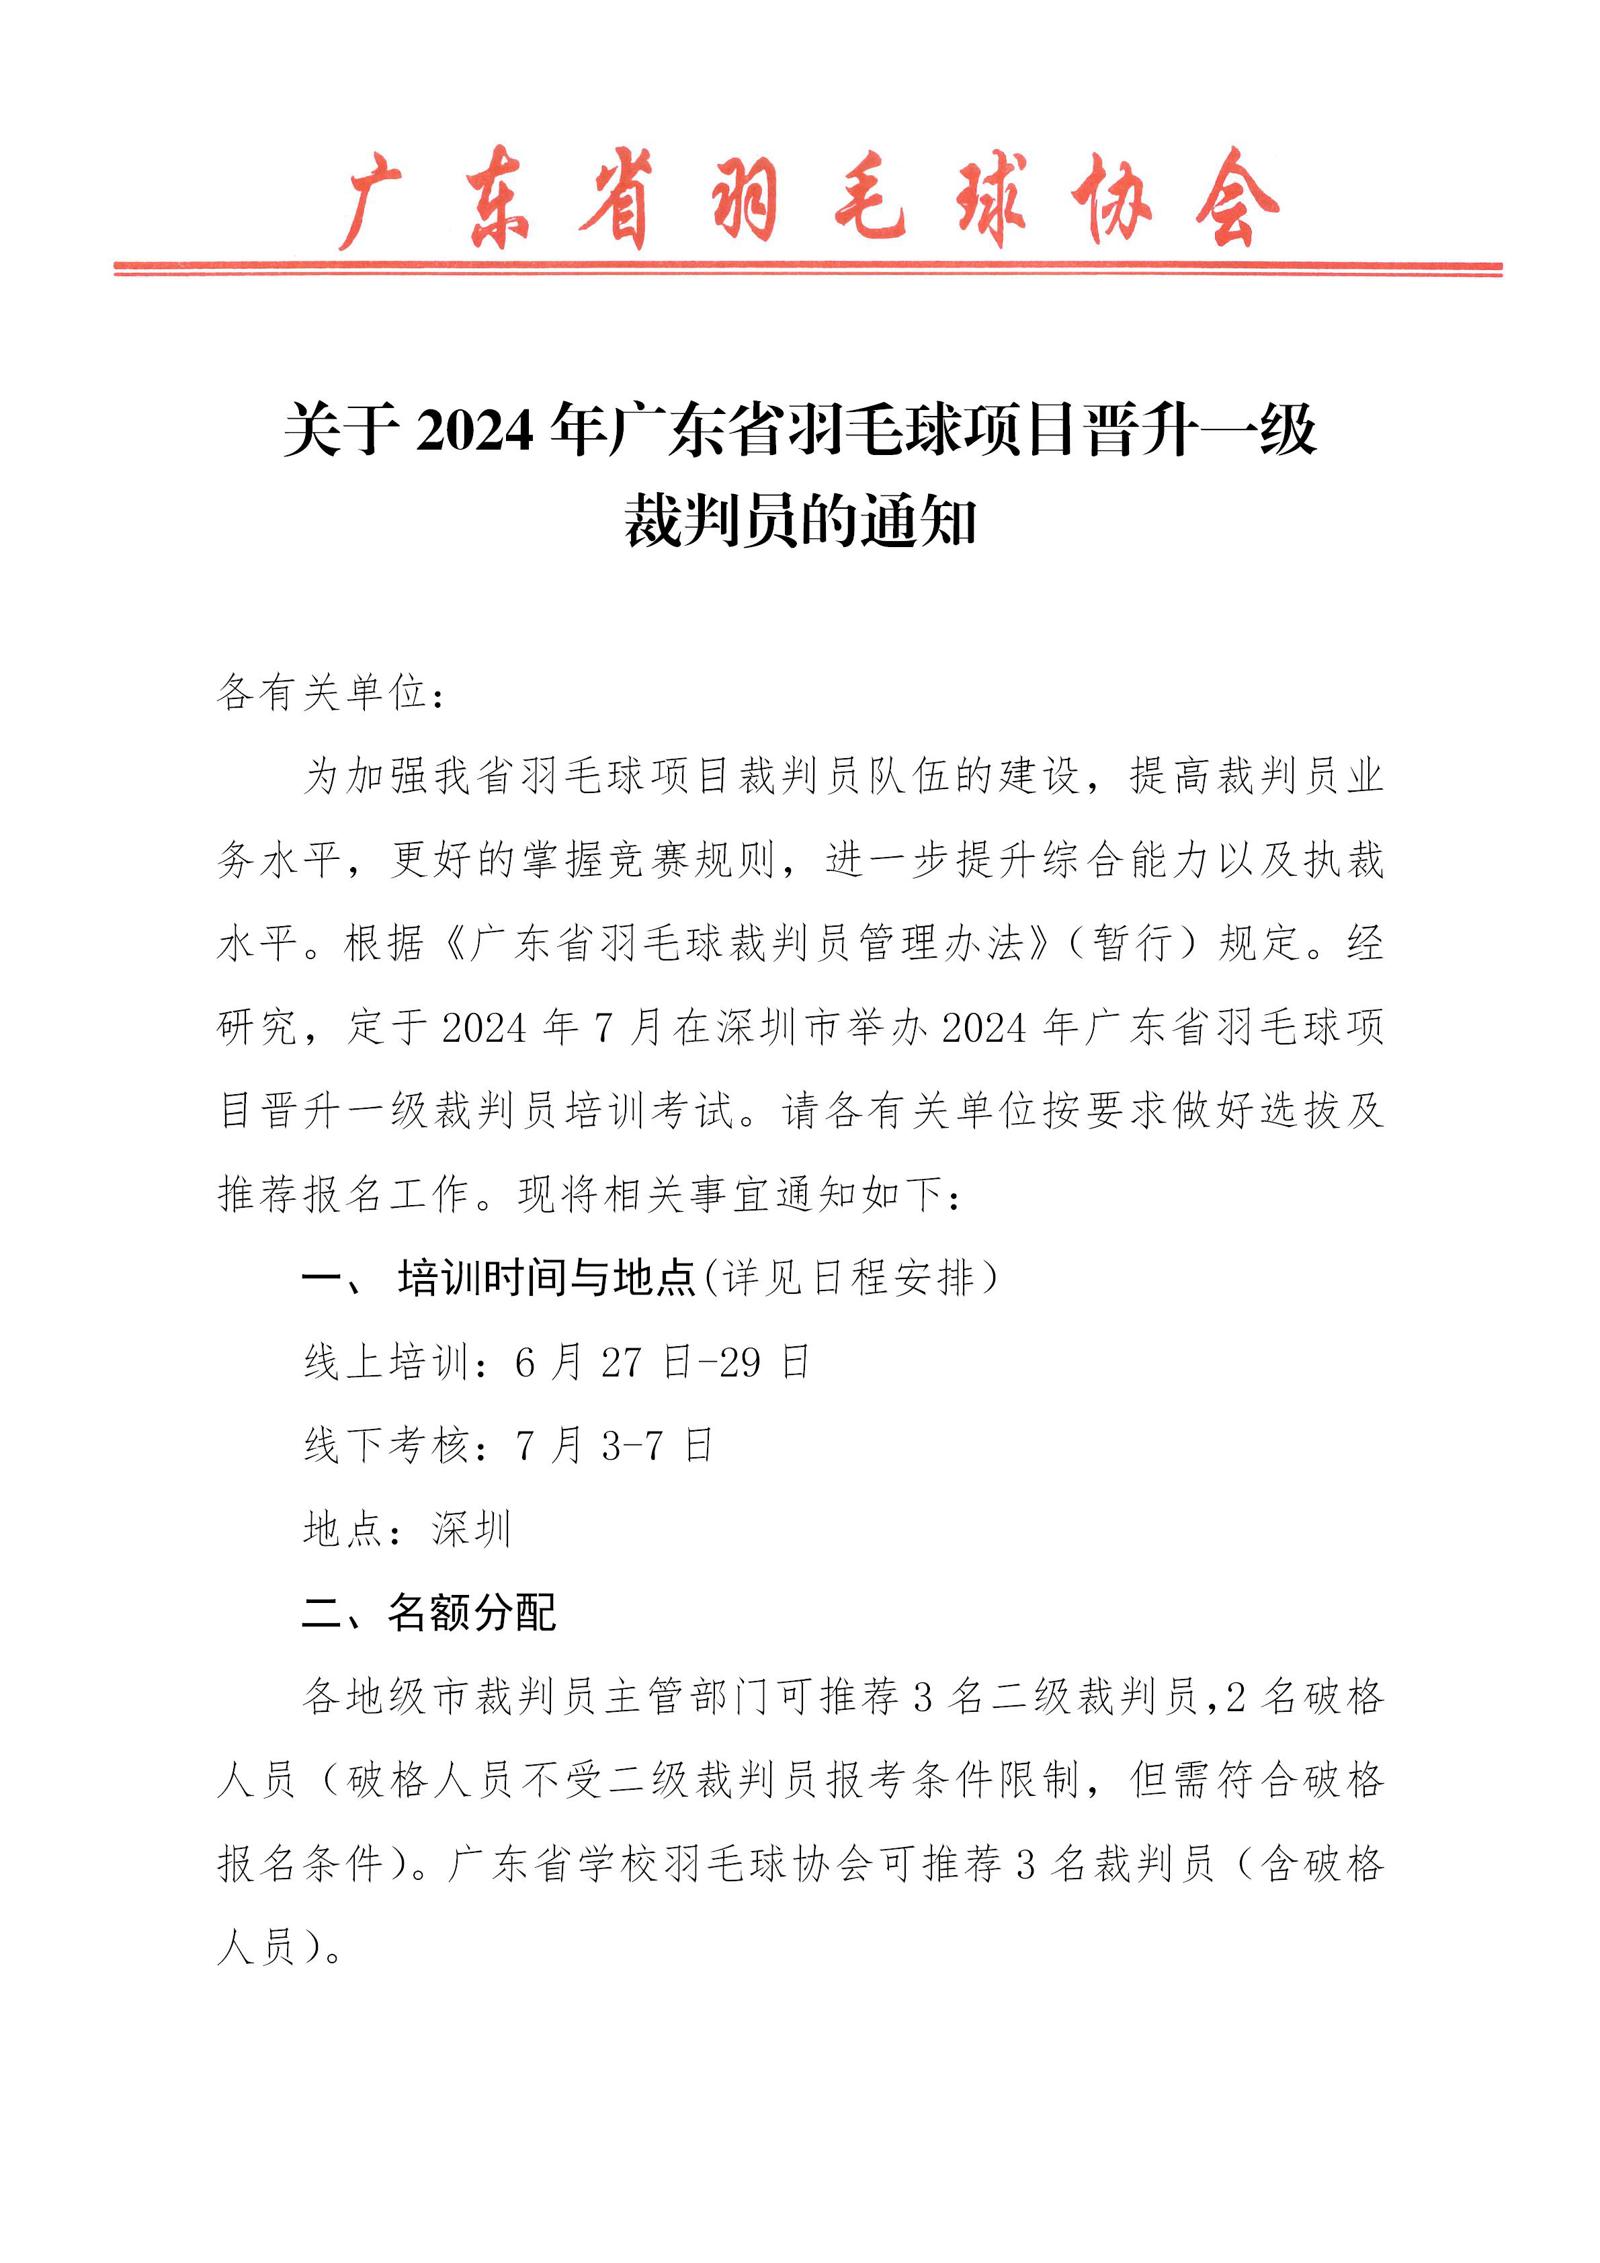 关于2024年广东省羽毛球项目晋升一级裁判员的通知_01